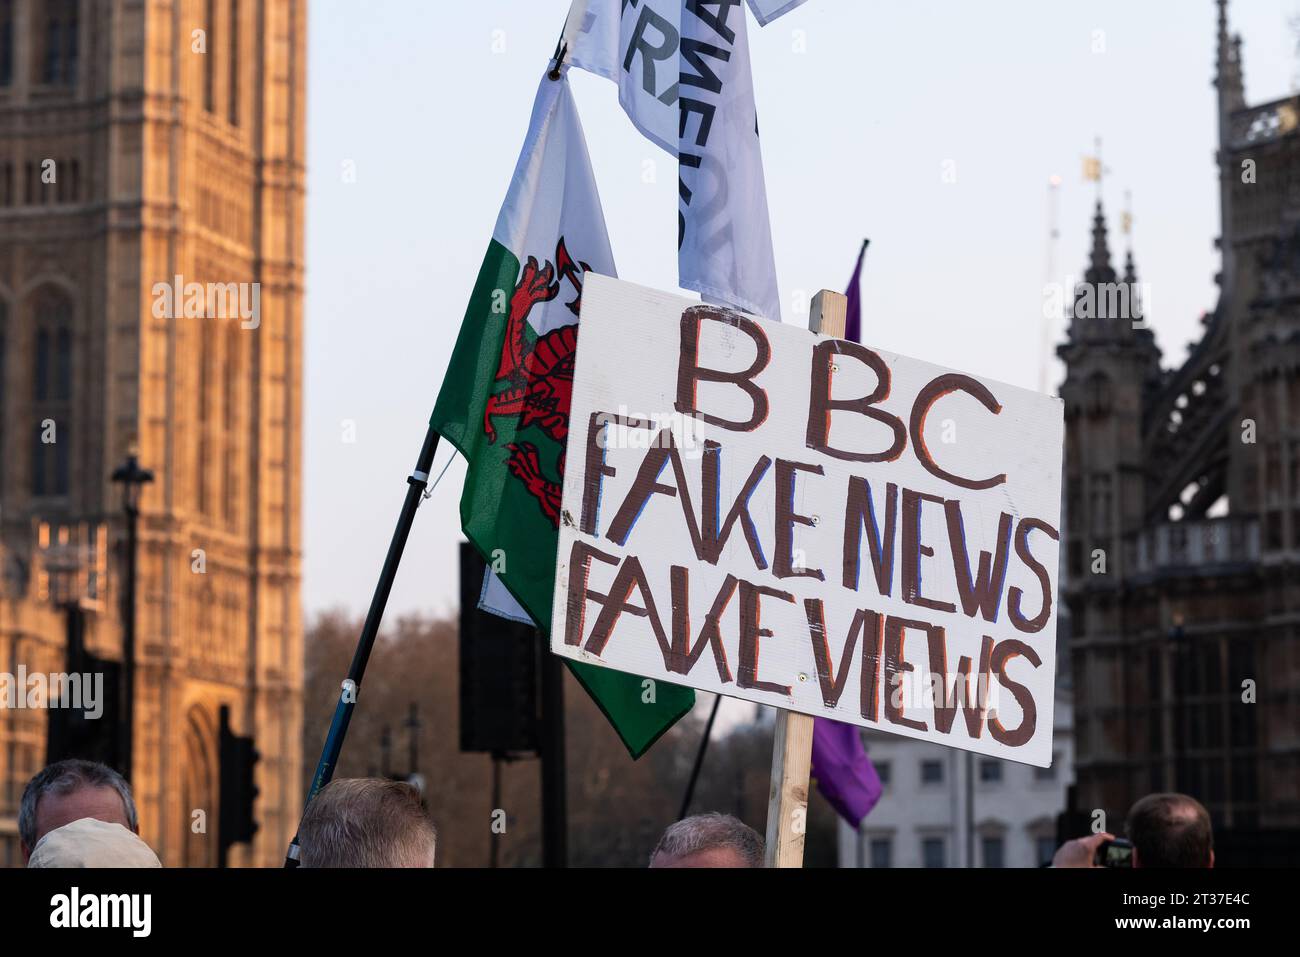 Affiche de fausses nouvelles de la BBC lors d'une manifestation contre l'incapacité du gouvernement britannique à quitter l'Union européenne malgré le vote référendaire Banque D'Images